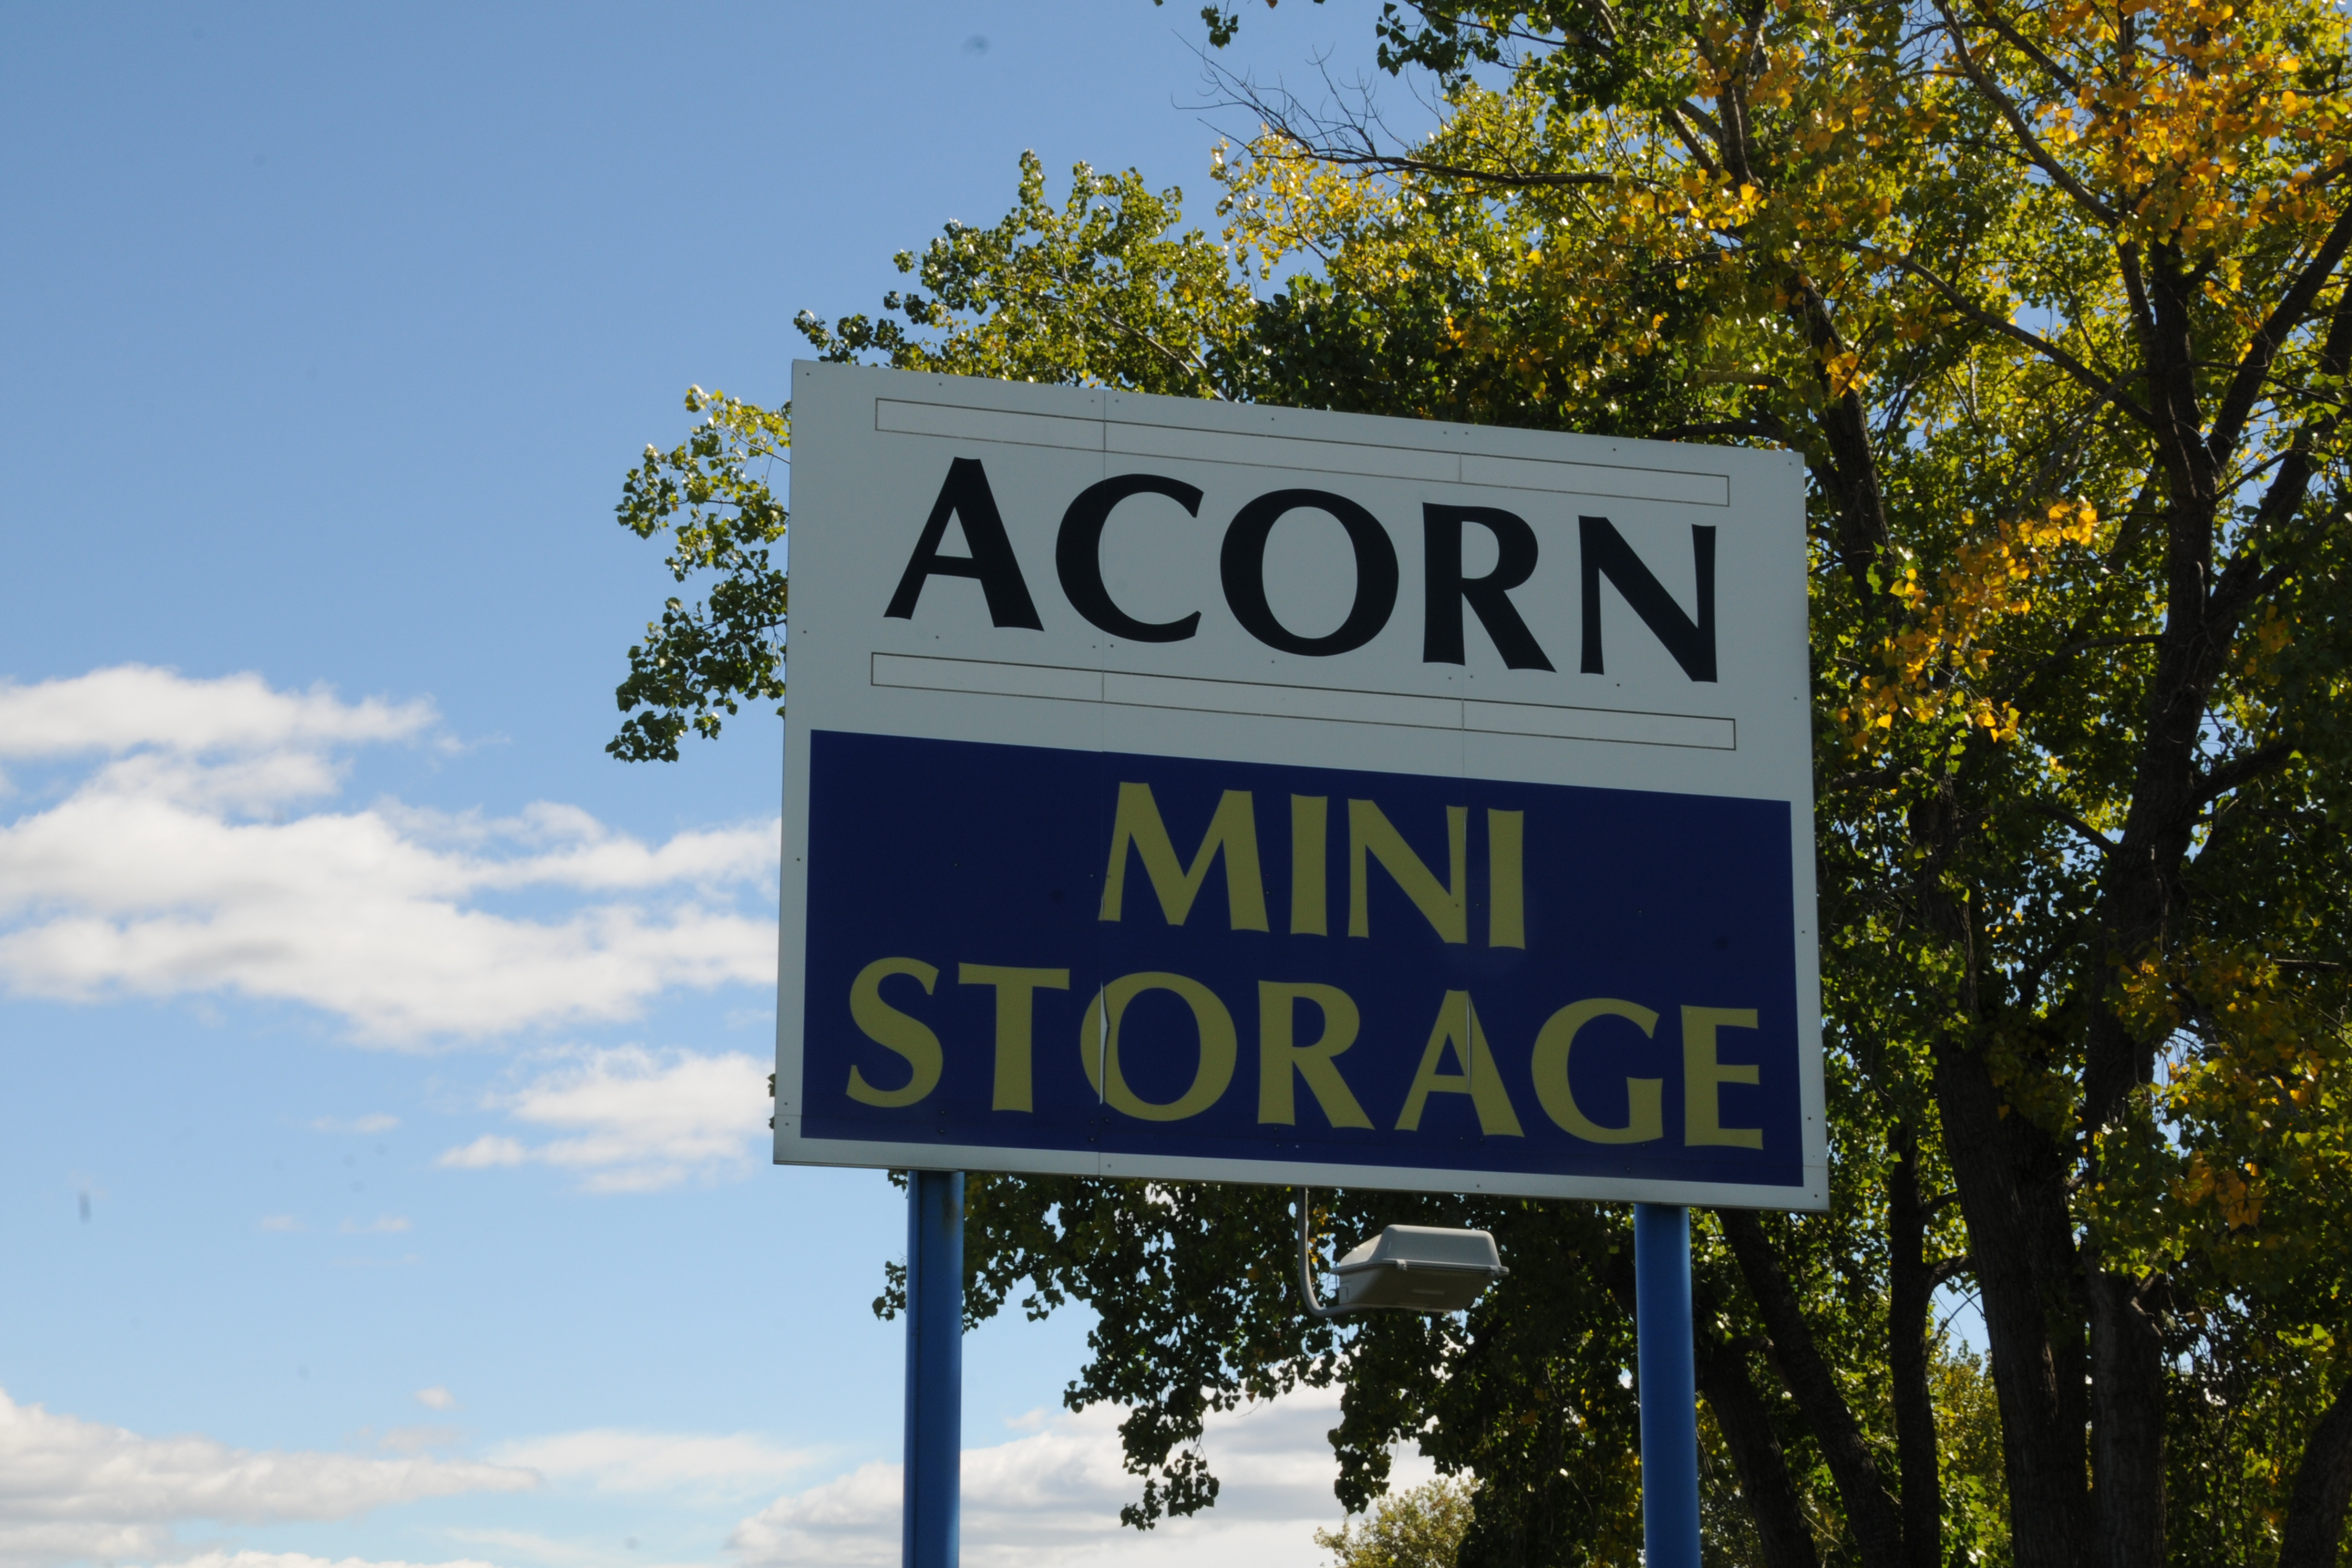 Acorn Mini Storage Bill Pay